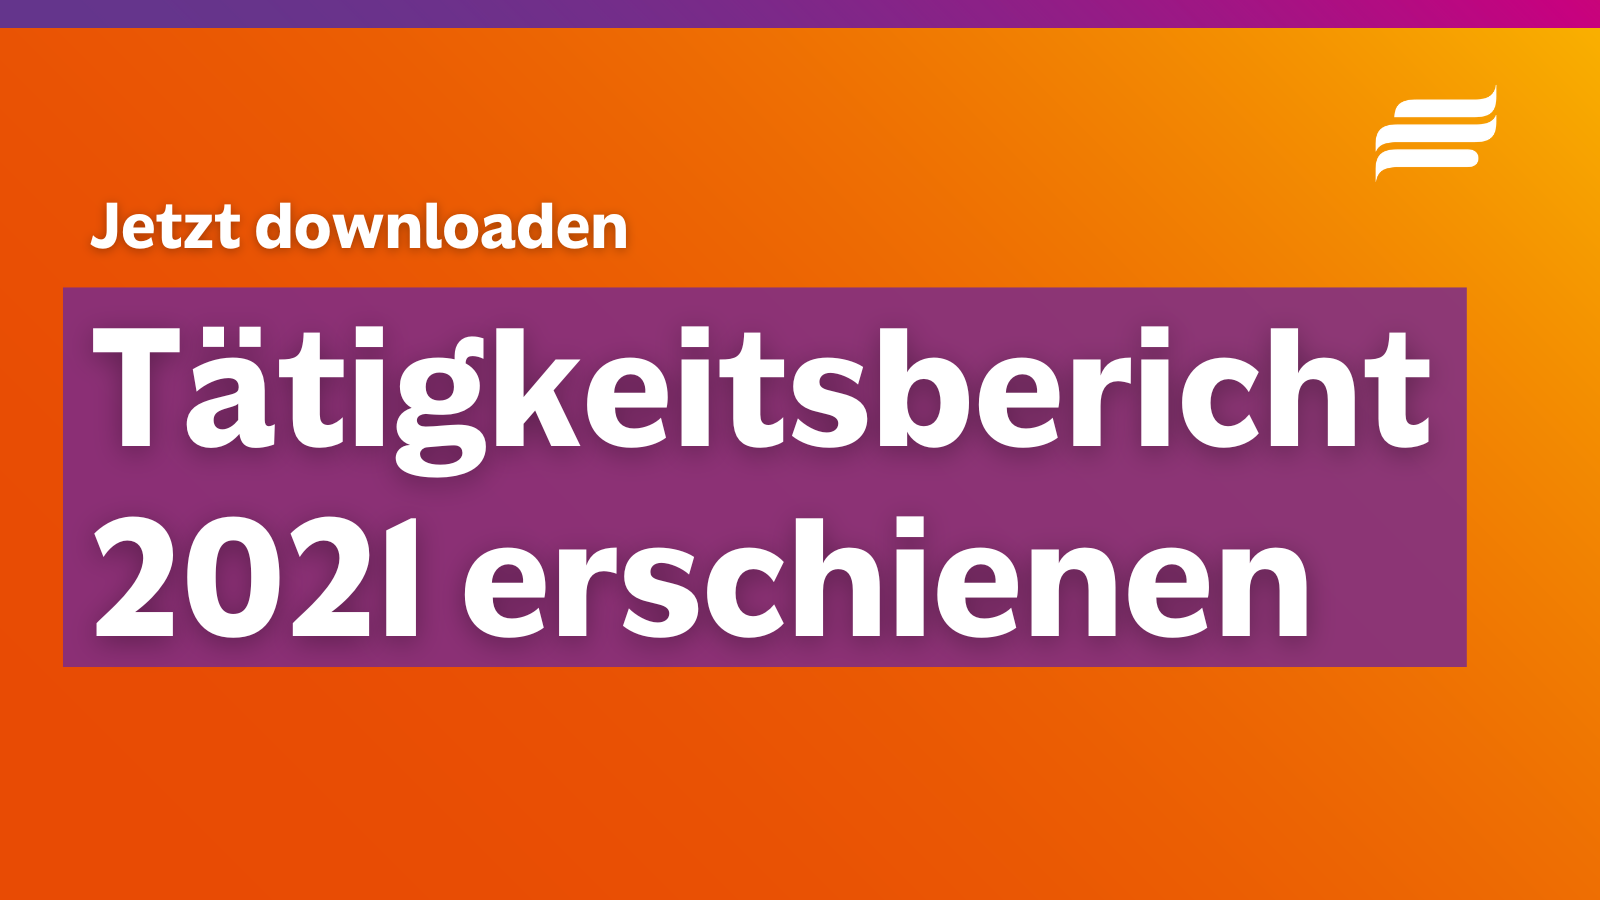 Textgrafik mit farbigem Hintergrund. Text: "Jetzt downloaden. Tätigkeitsbericht 2021 erschienen" Oben rechts: Logo der Bundesstiftung Magnus Hirschfeld